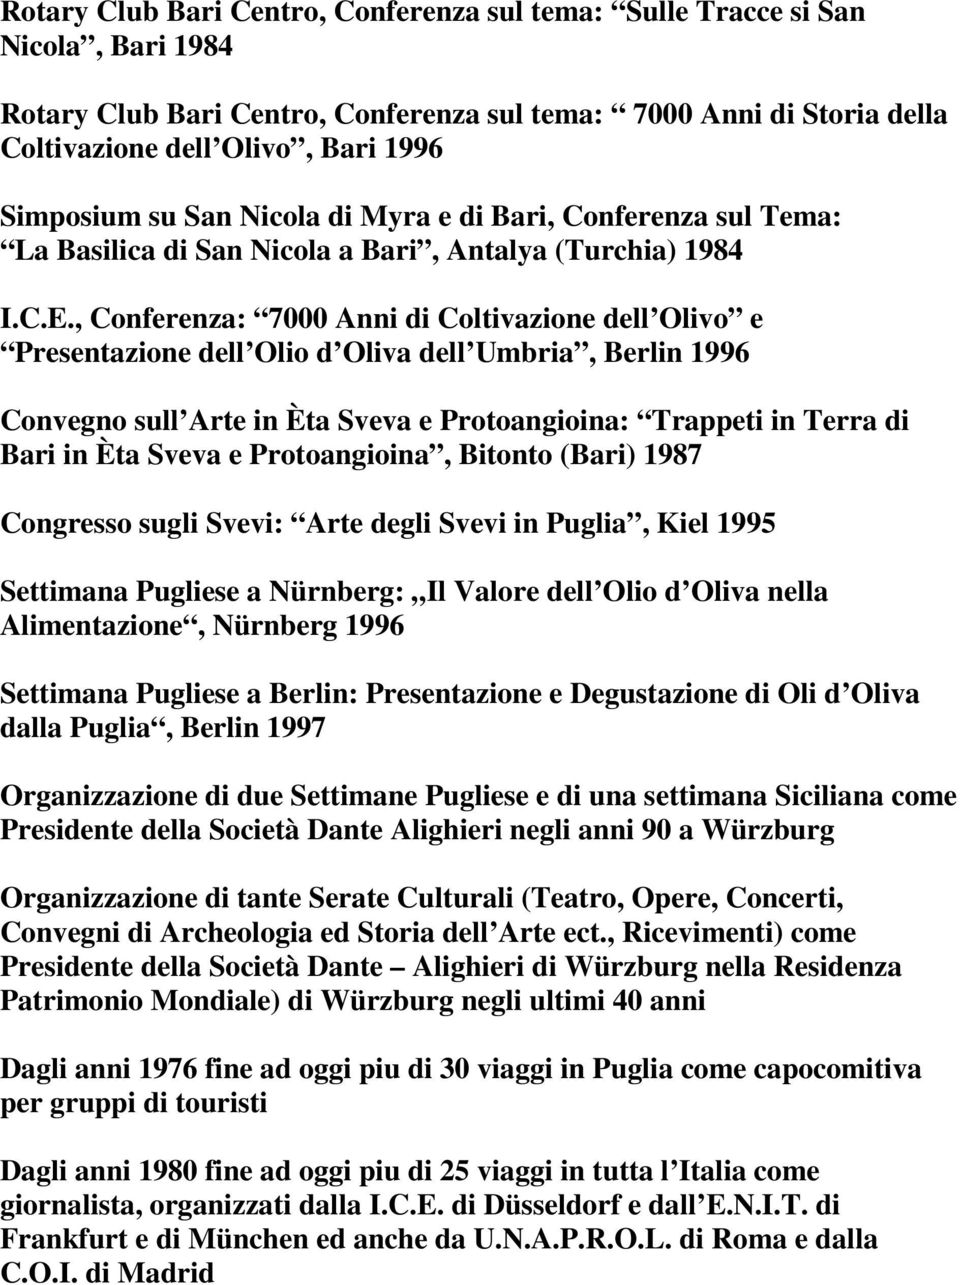 , Conferenza: 7000 Anni di Coltivazione dell Olivo e Presentazione dell Olio d Oliva dell Umbria, Berlin 1996 Convegno sull Arte in Èta Sveva e Protoangioina: Trappeti in Terra di Bari in Èta Sveva e